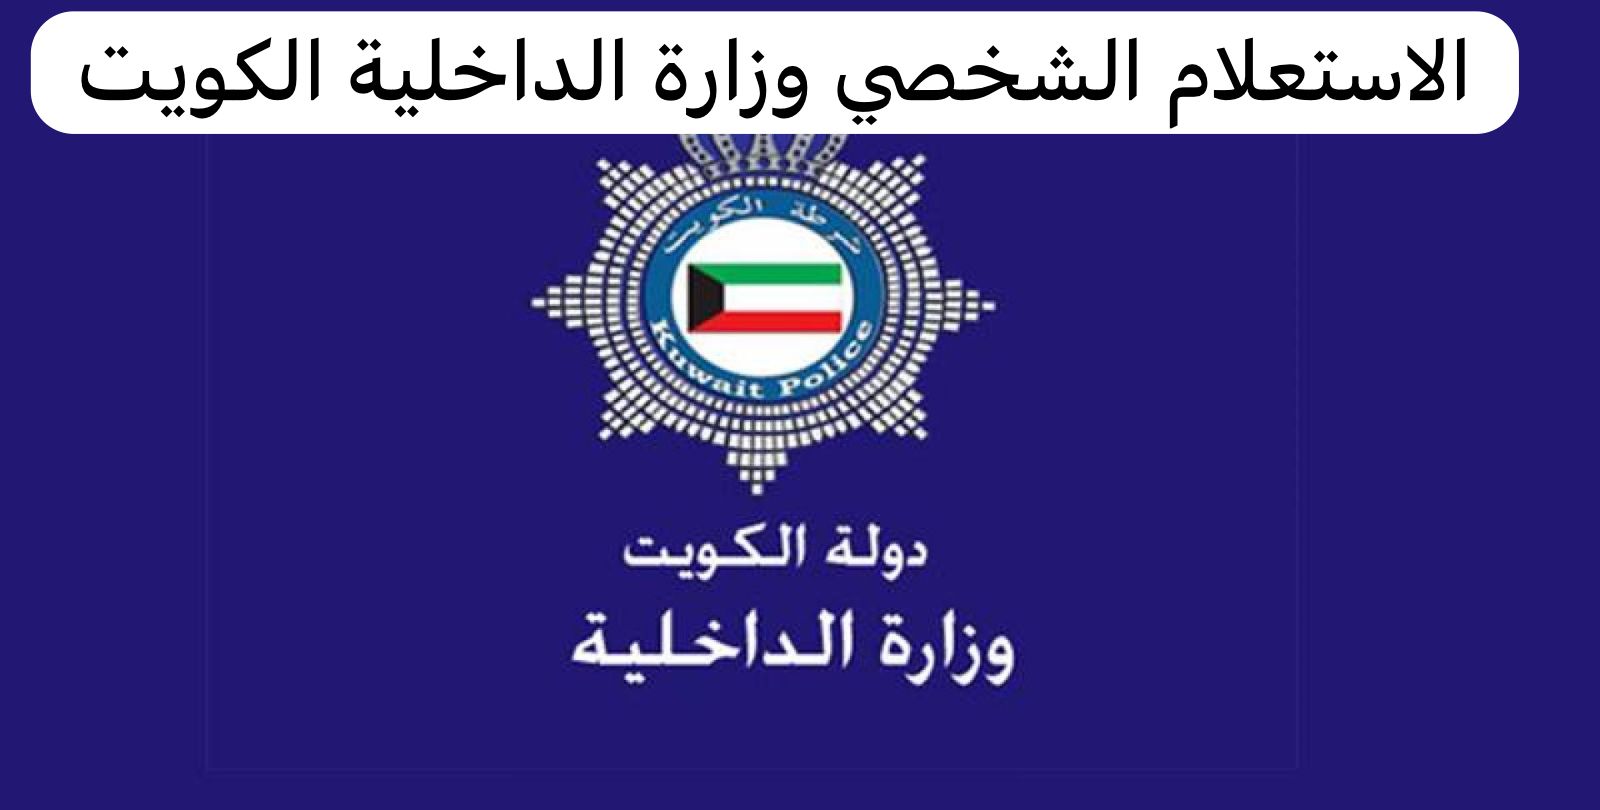 الاستعلام الشخصي وزارة الداخلية الكويت